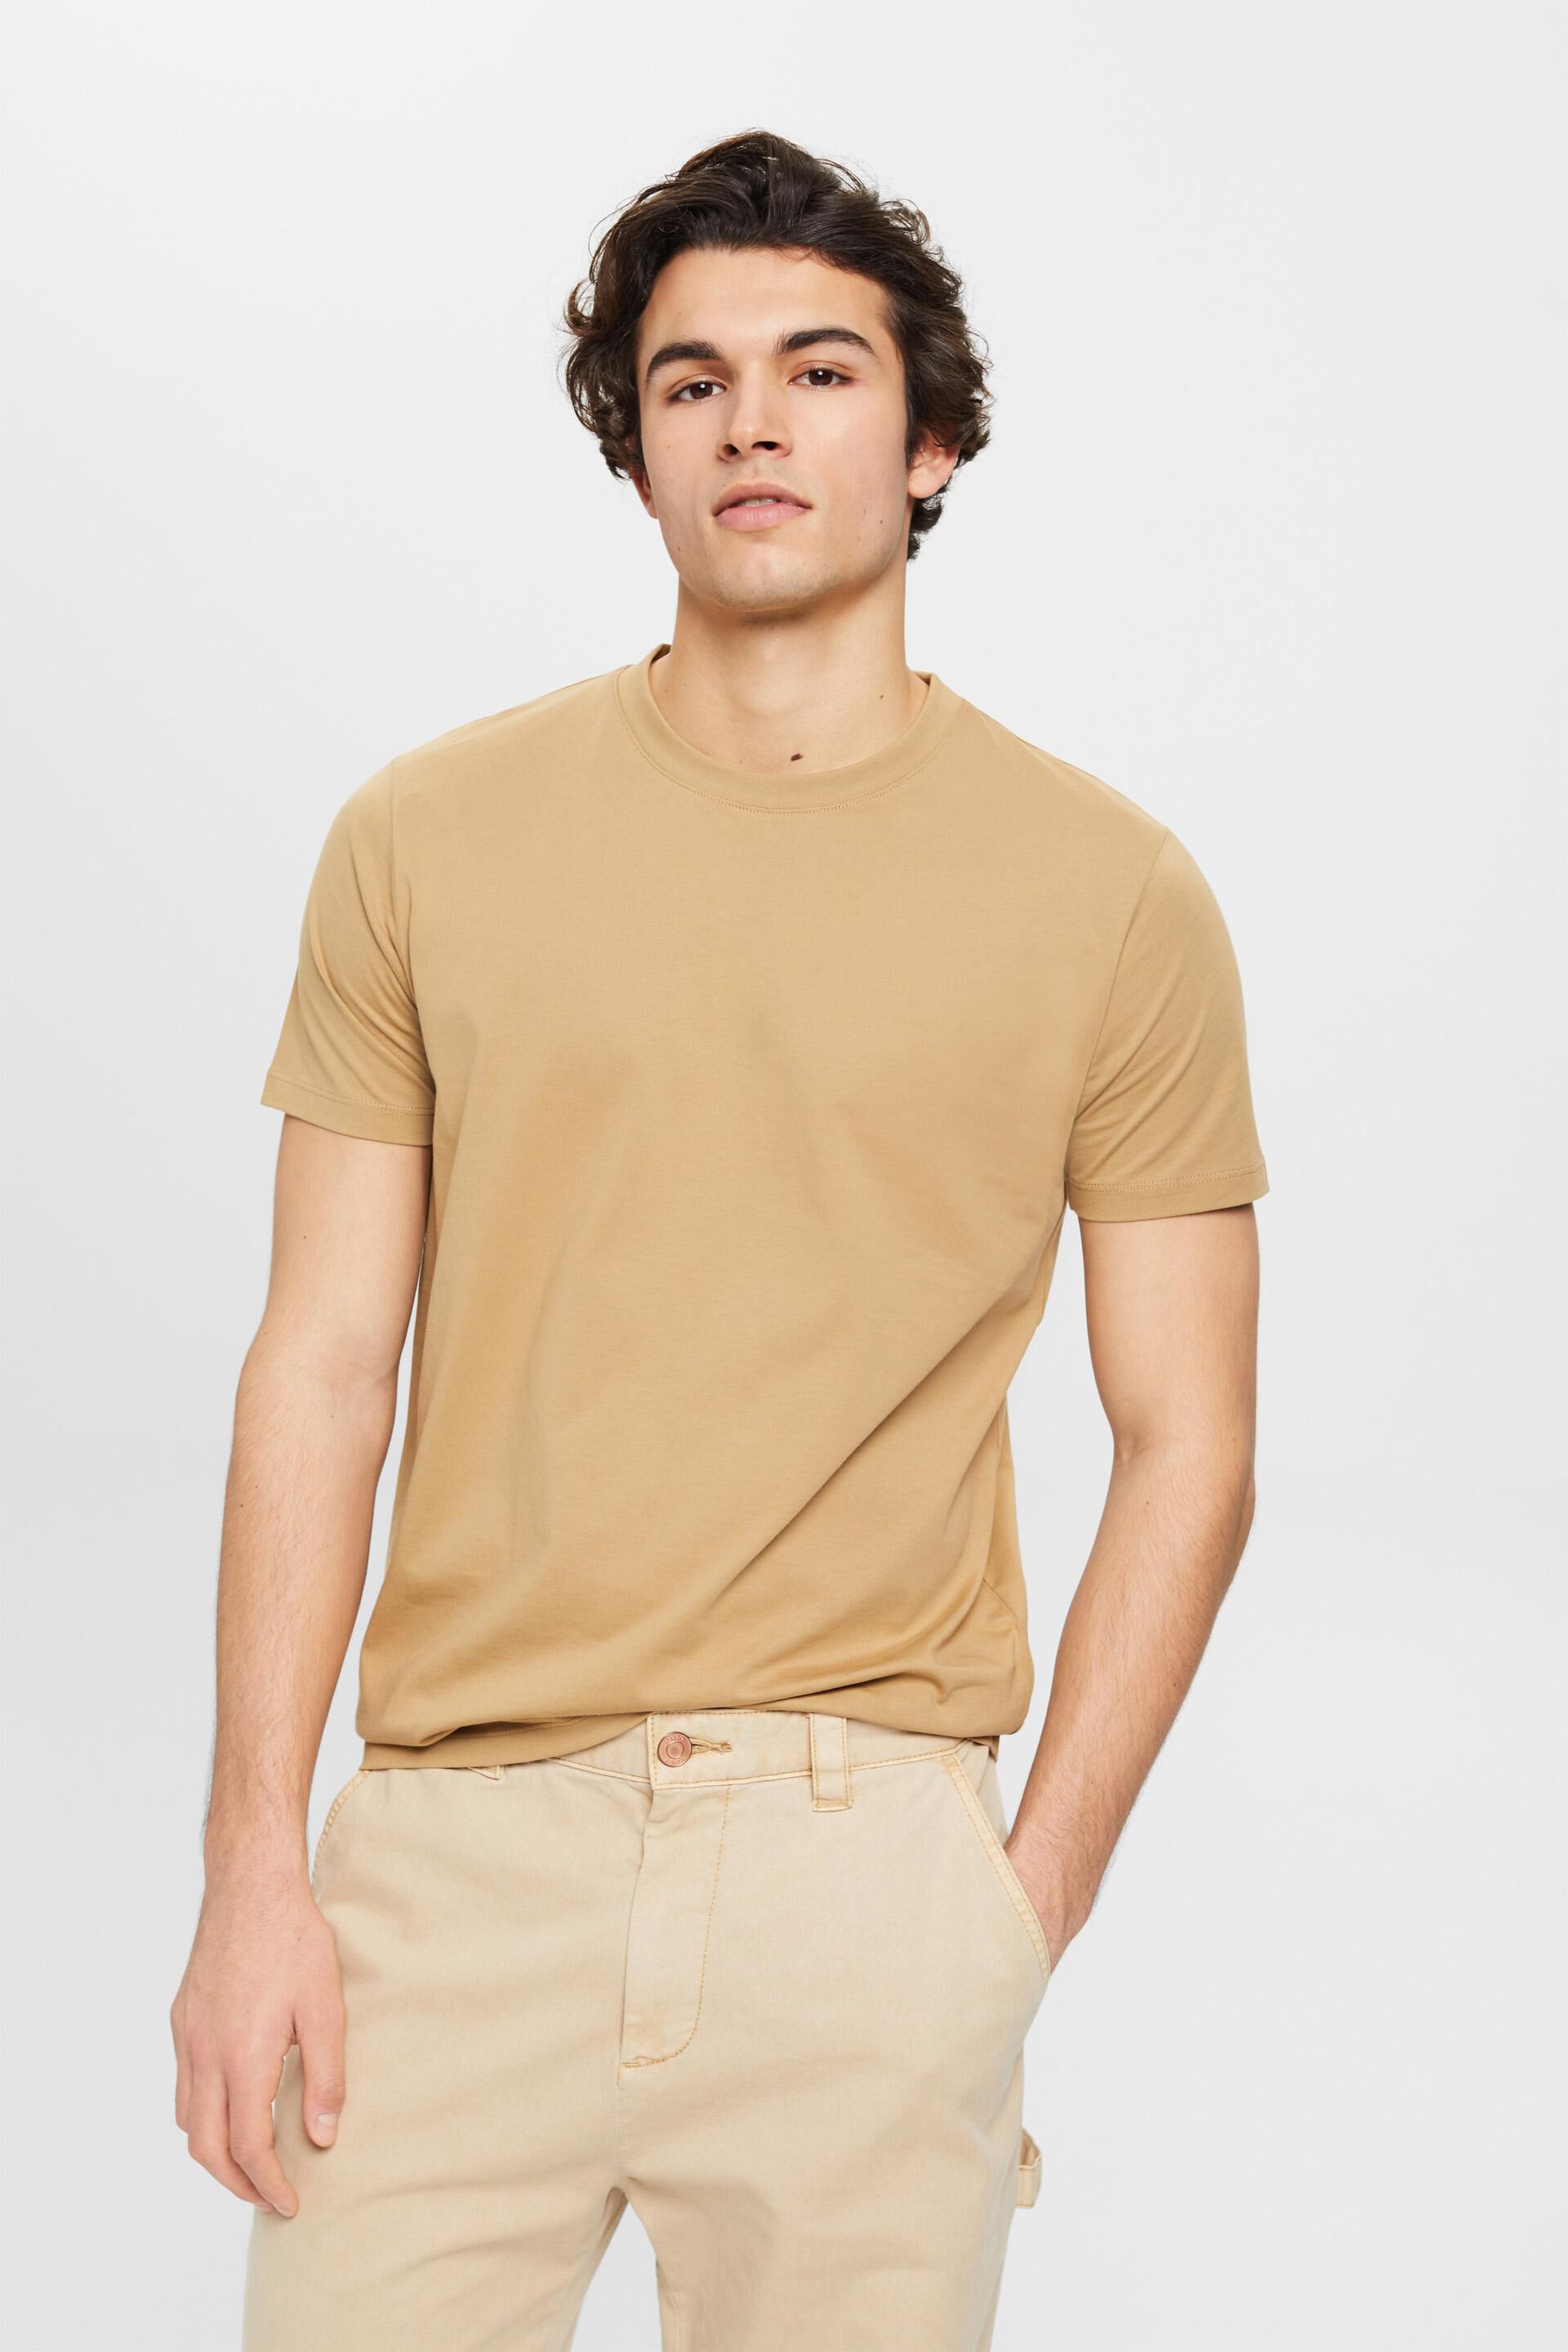 Esprit t-shirt neck crew Pure cotton